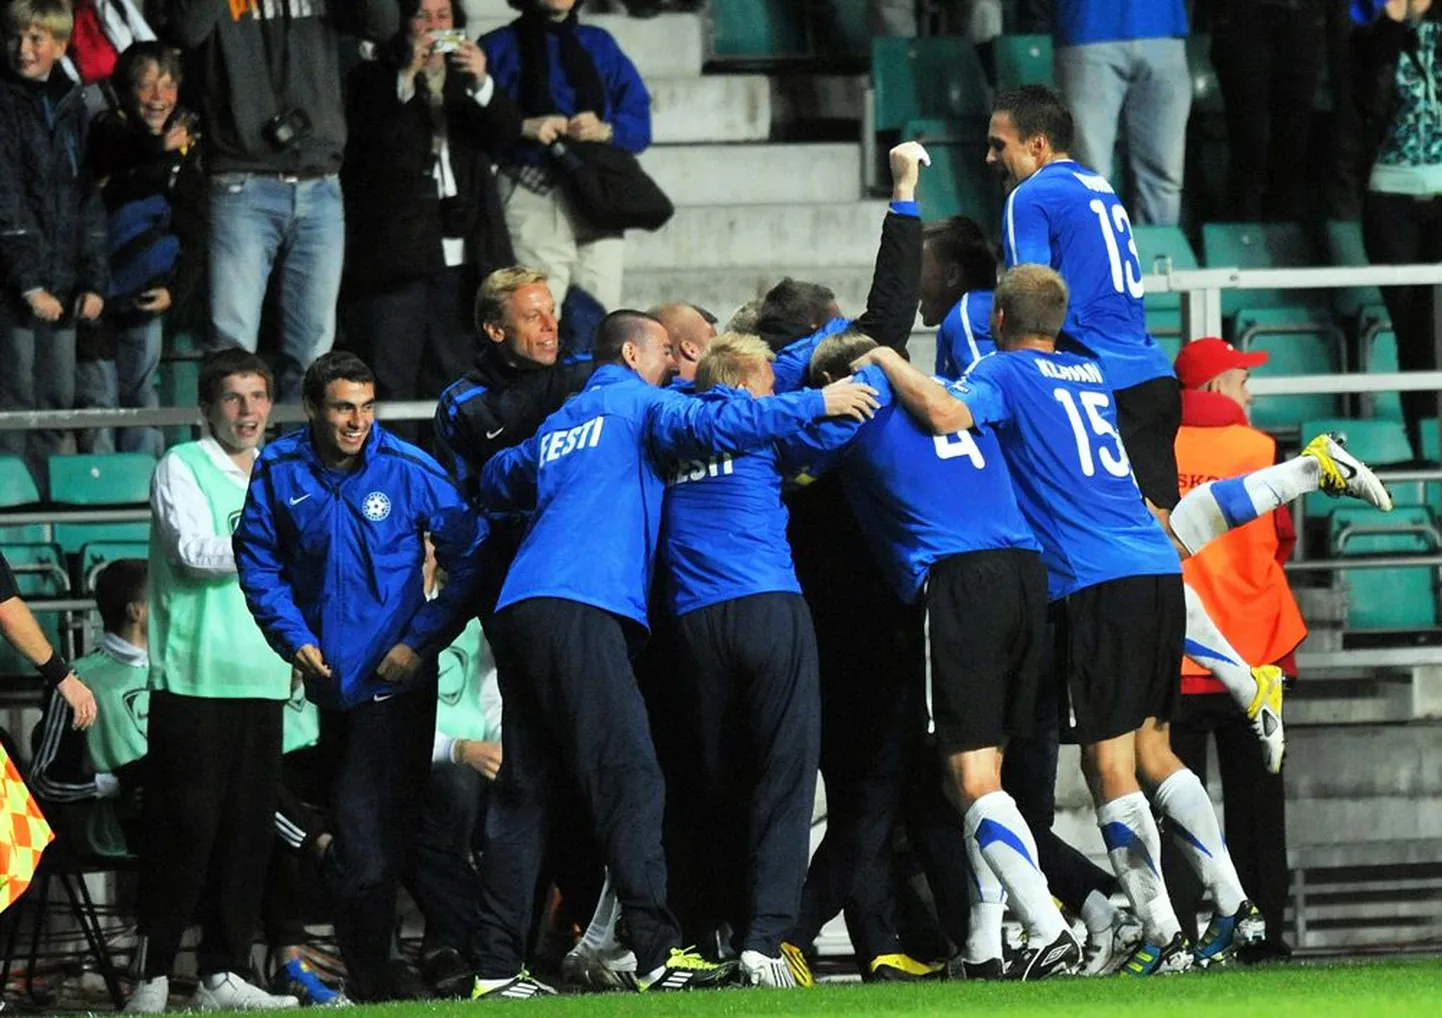 Eesti jalgpallikoondislased tähistamas kodust 4:1 võitu Põhja-Iirimaa üle.